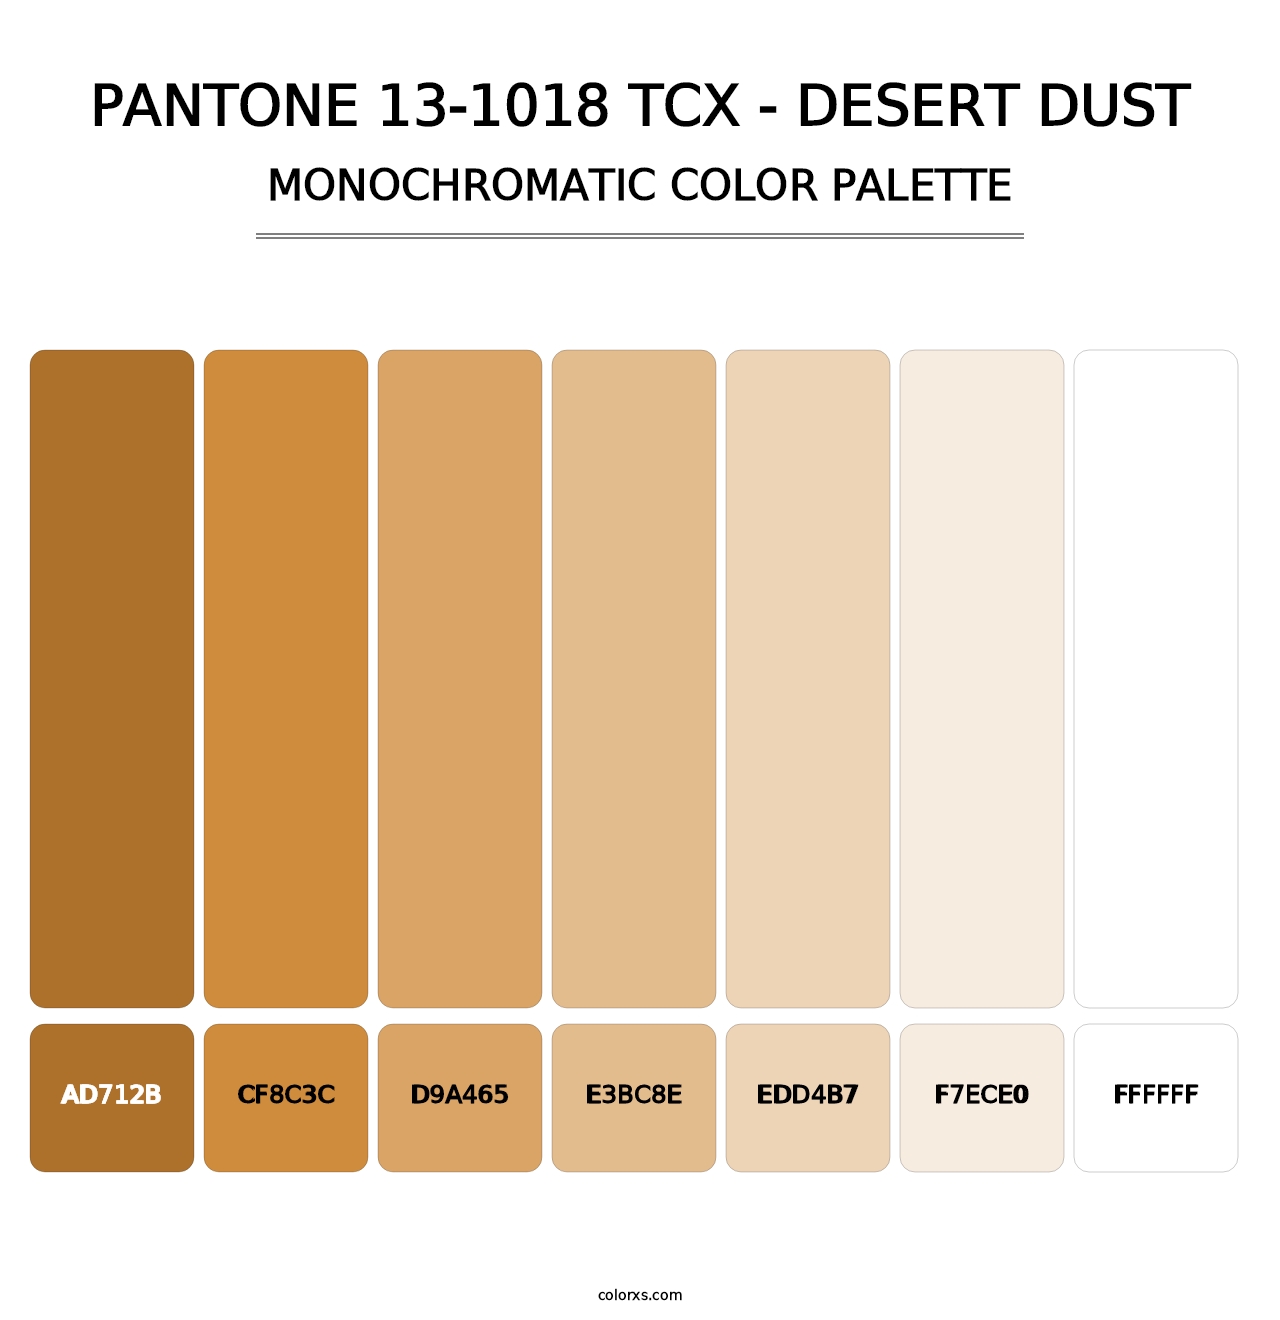 PANTONE 13-1018 TCX - Desert Dust - Monochromatic Color Palette